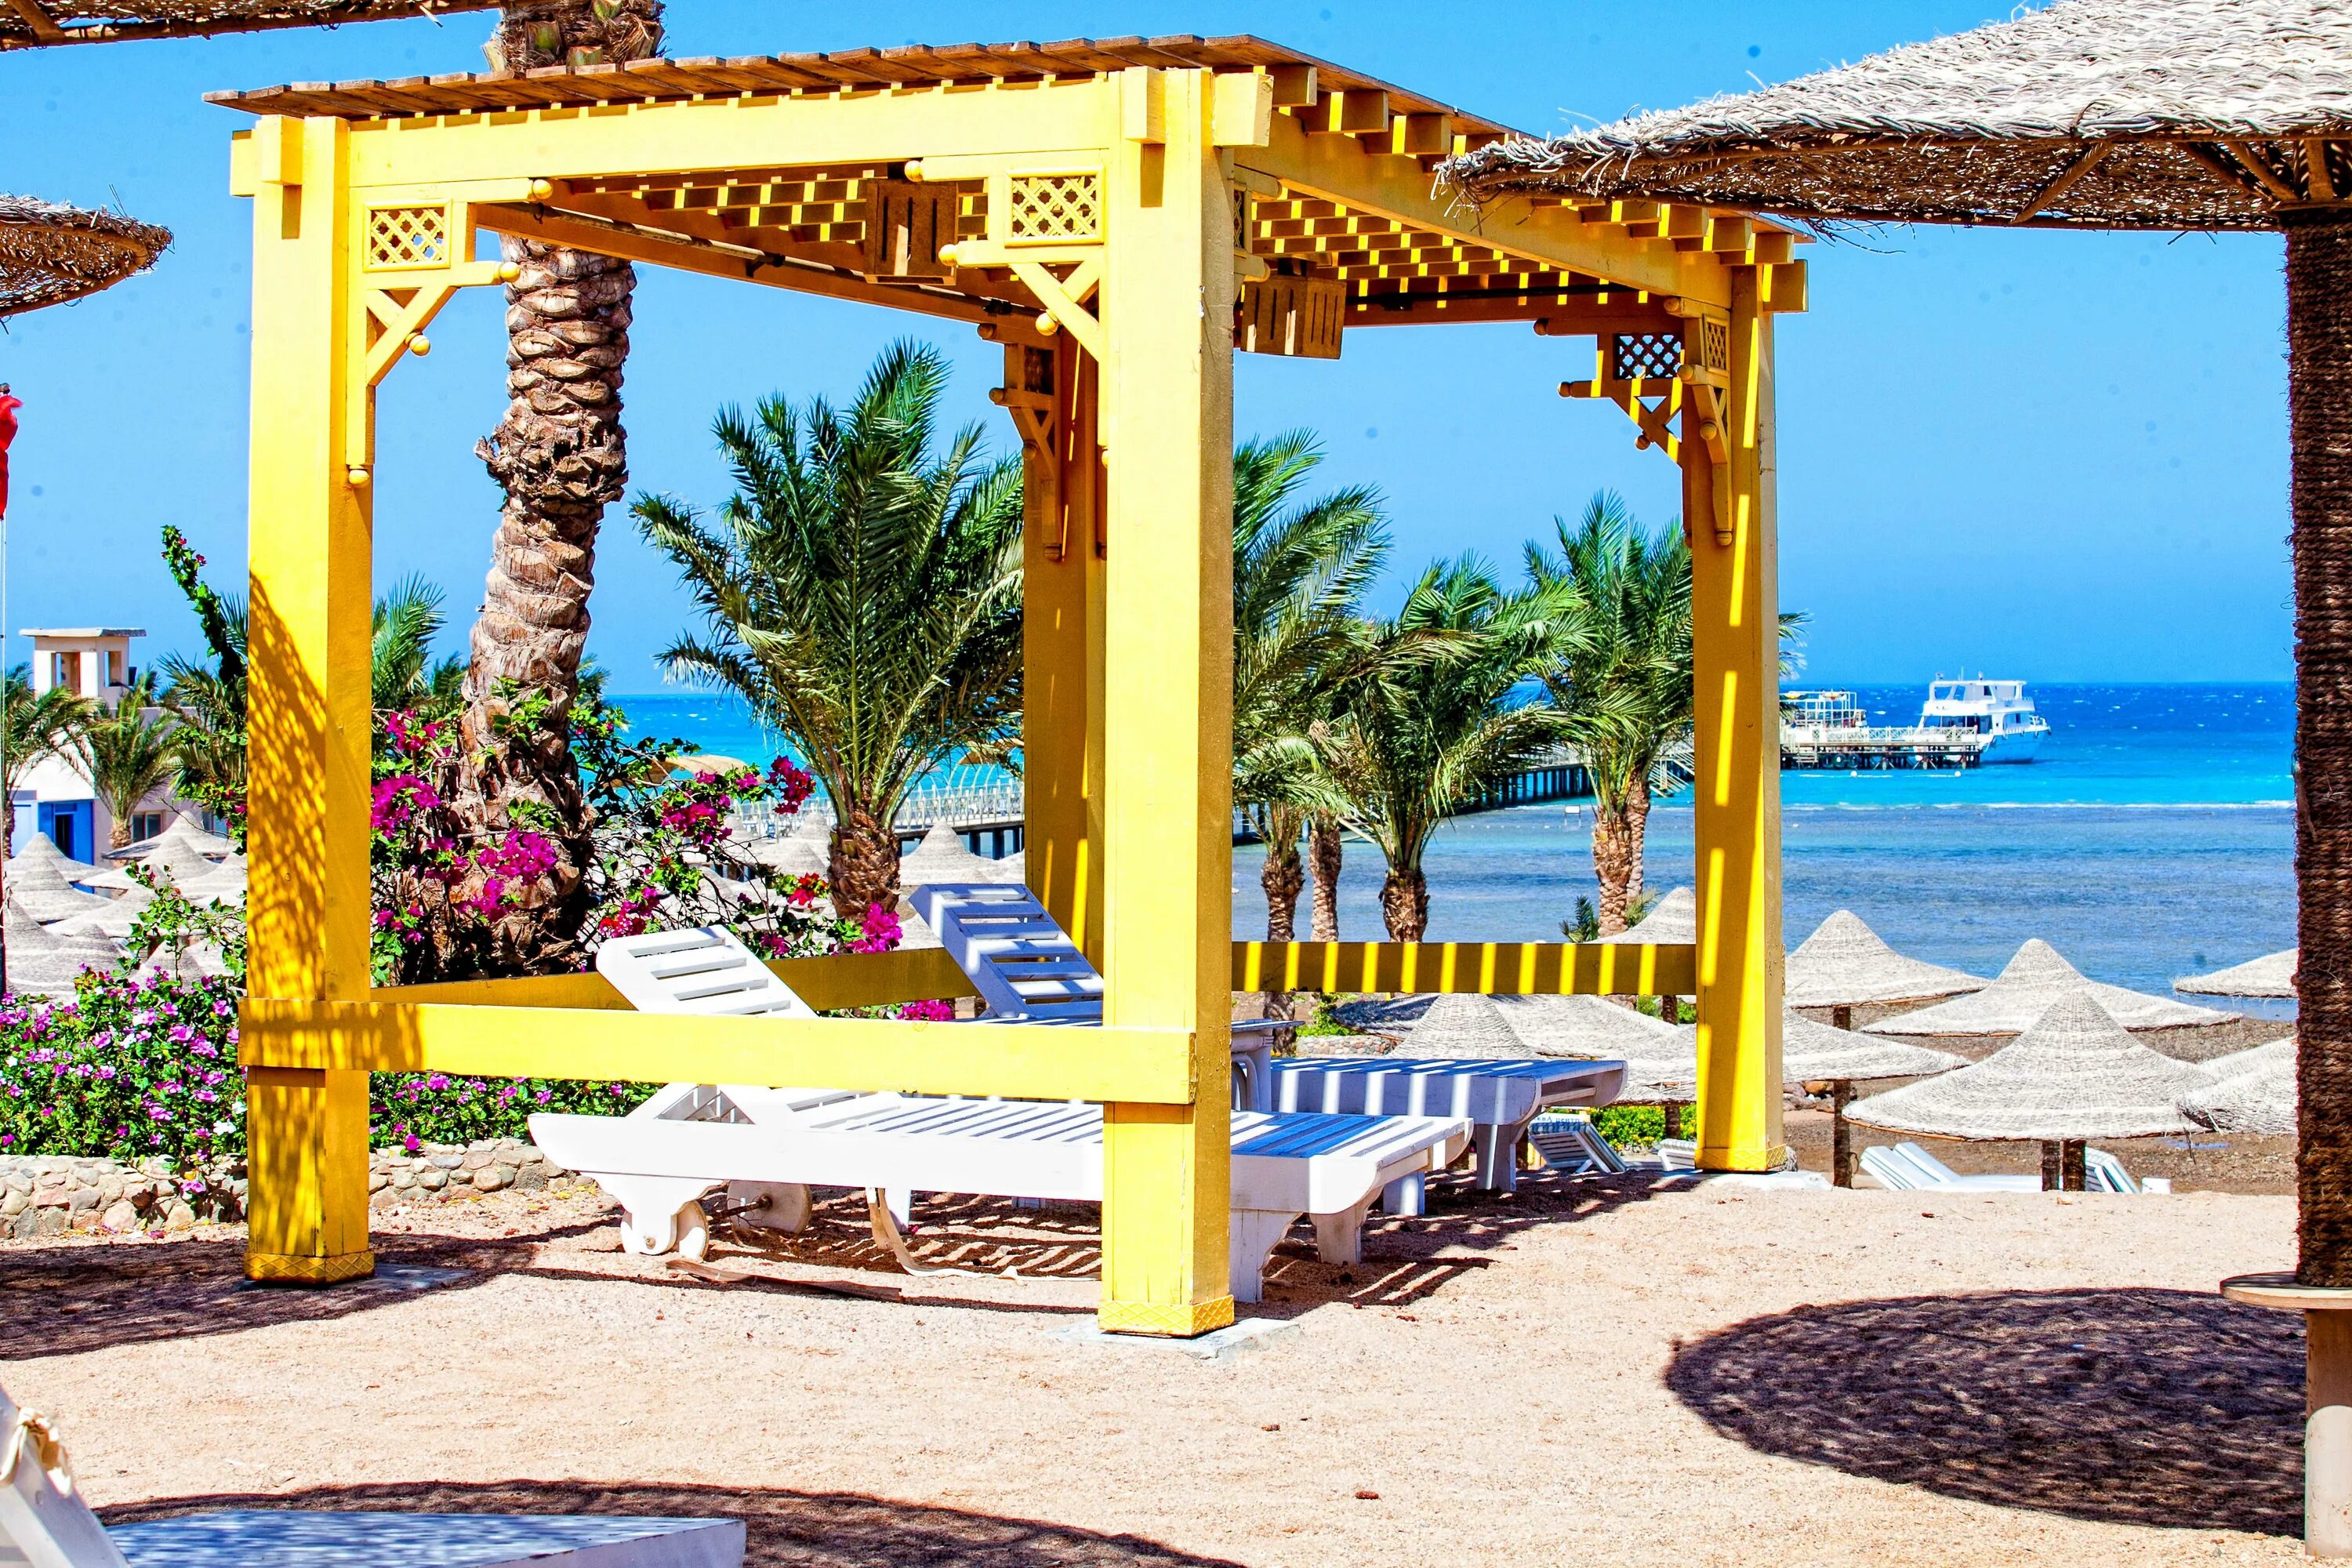 El karma aqua beach resort египет. Египет,Хургада,Nubia Aqua Beach Resort. Нубия Аква Бич Резорт 4. Nubia Aqua Resort 5 Египет Хургада. Нубия Египет отель.